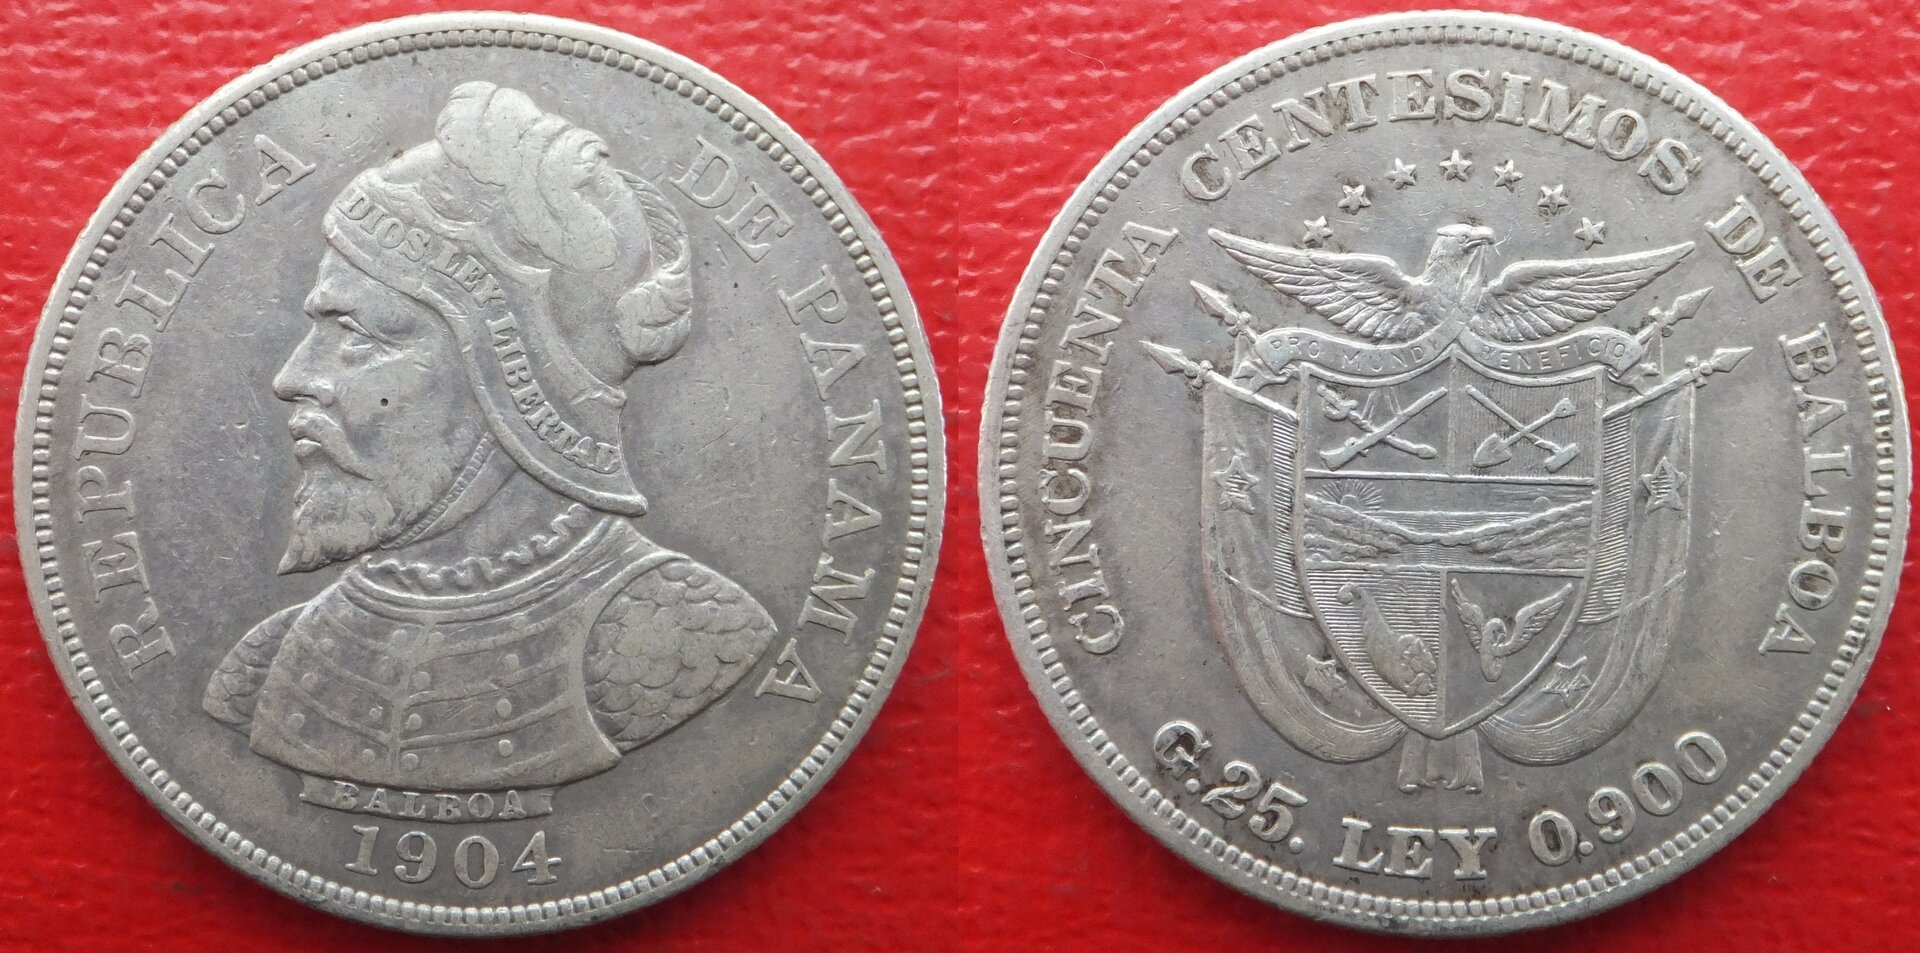 Panama 50 centavos 1904 (3).jpg